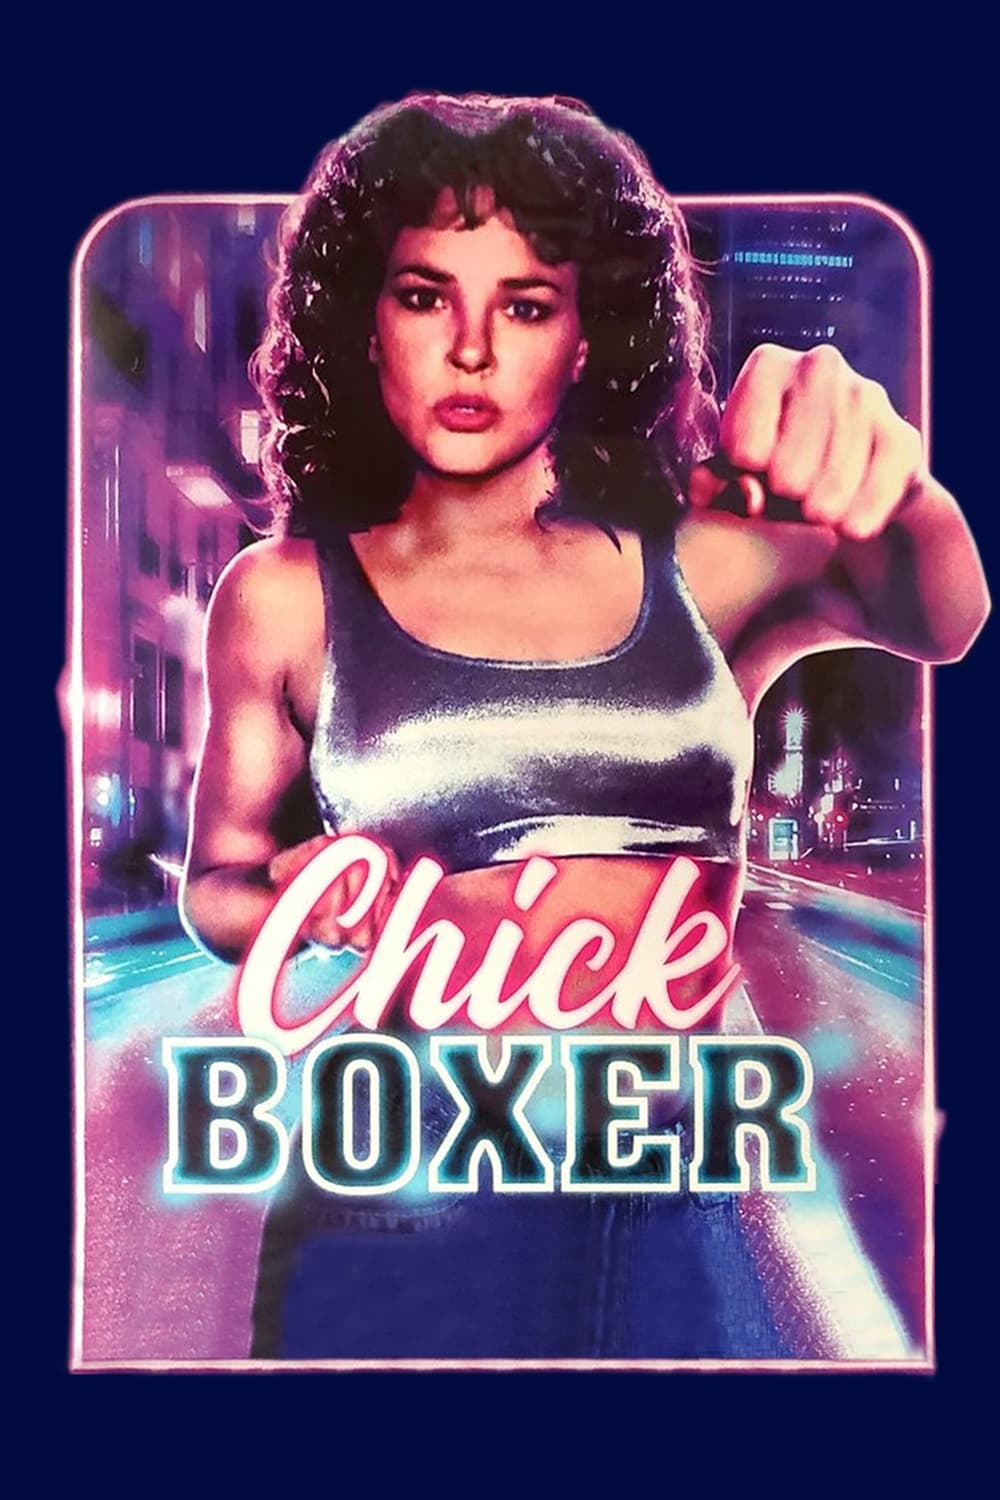 Chickboxer (1992) постер